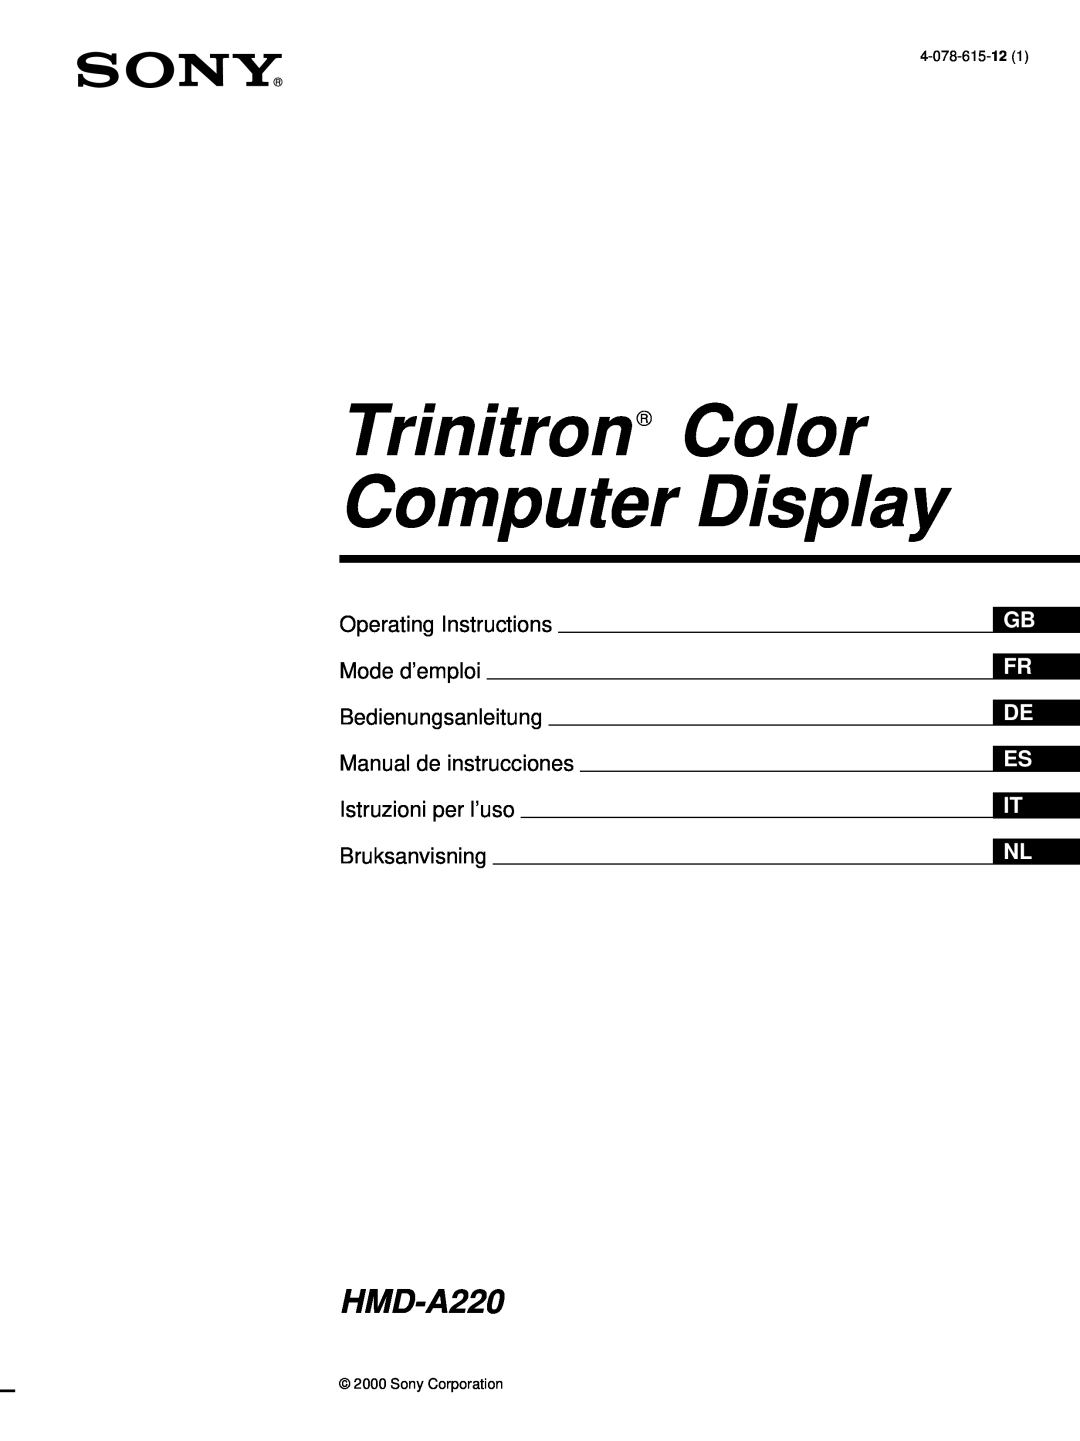 Sony HMD-A220 operating instructions Trinitron Color Computer Display, Operating Instructions, Mode d’emploi, 4-078-615-12 